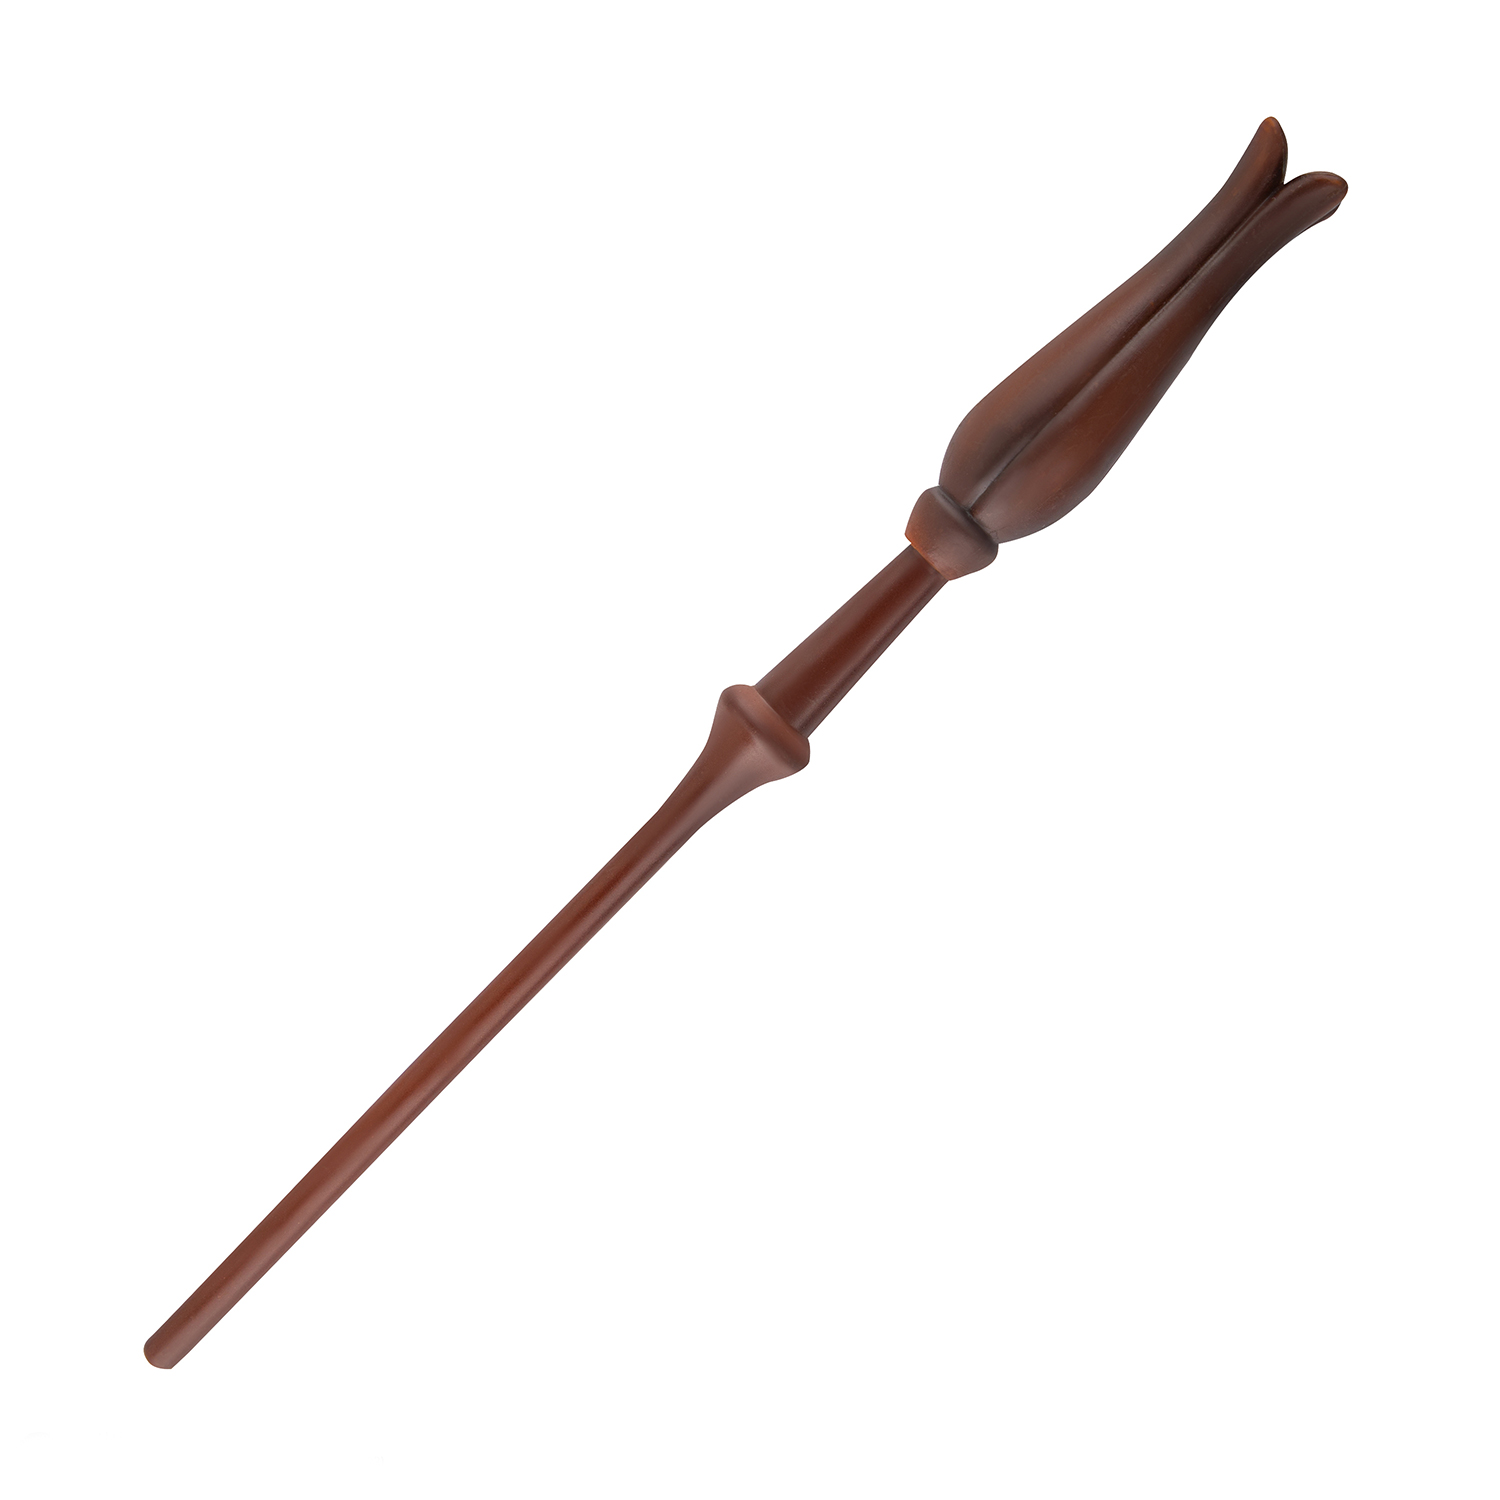 Ручка Harry Potter в виде палочки Полумны Лавгуд 25 см с подставкой и закладкой - фото 4